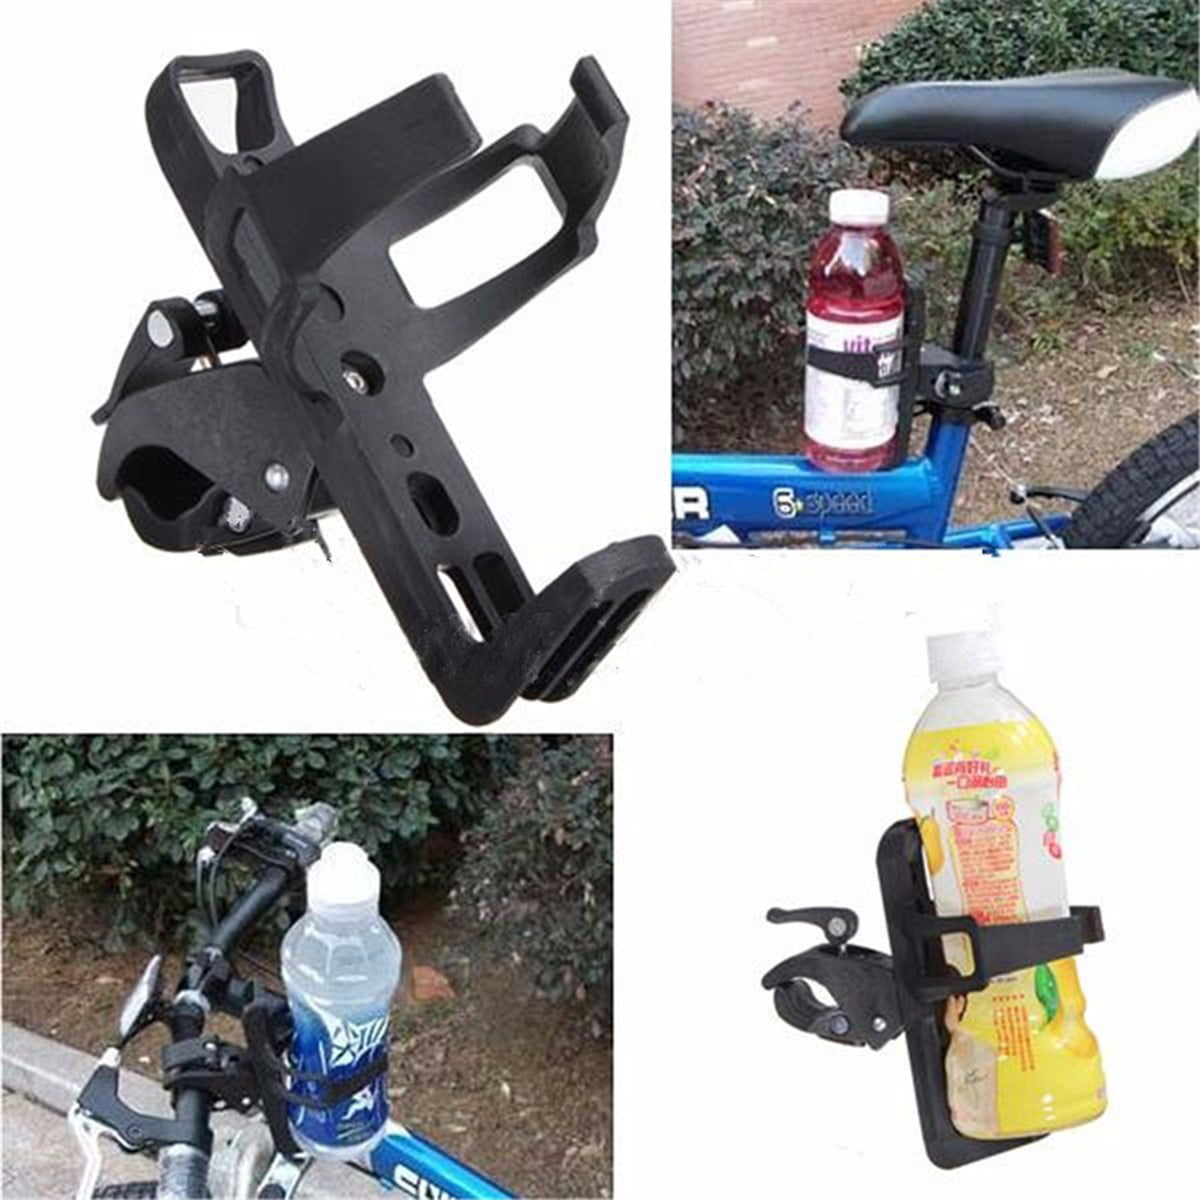 Tmtop Bike Stroller Cup Holder Universal Motorcycle Bike Handlebar Drink Cup Holder Beverage Water Bottle